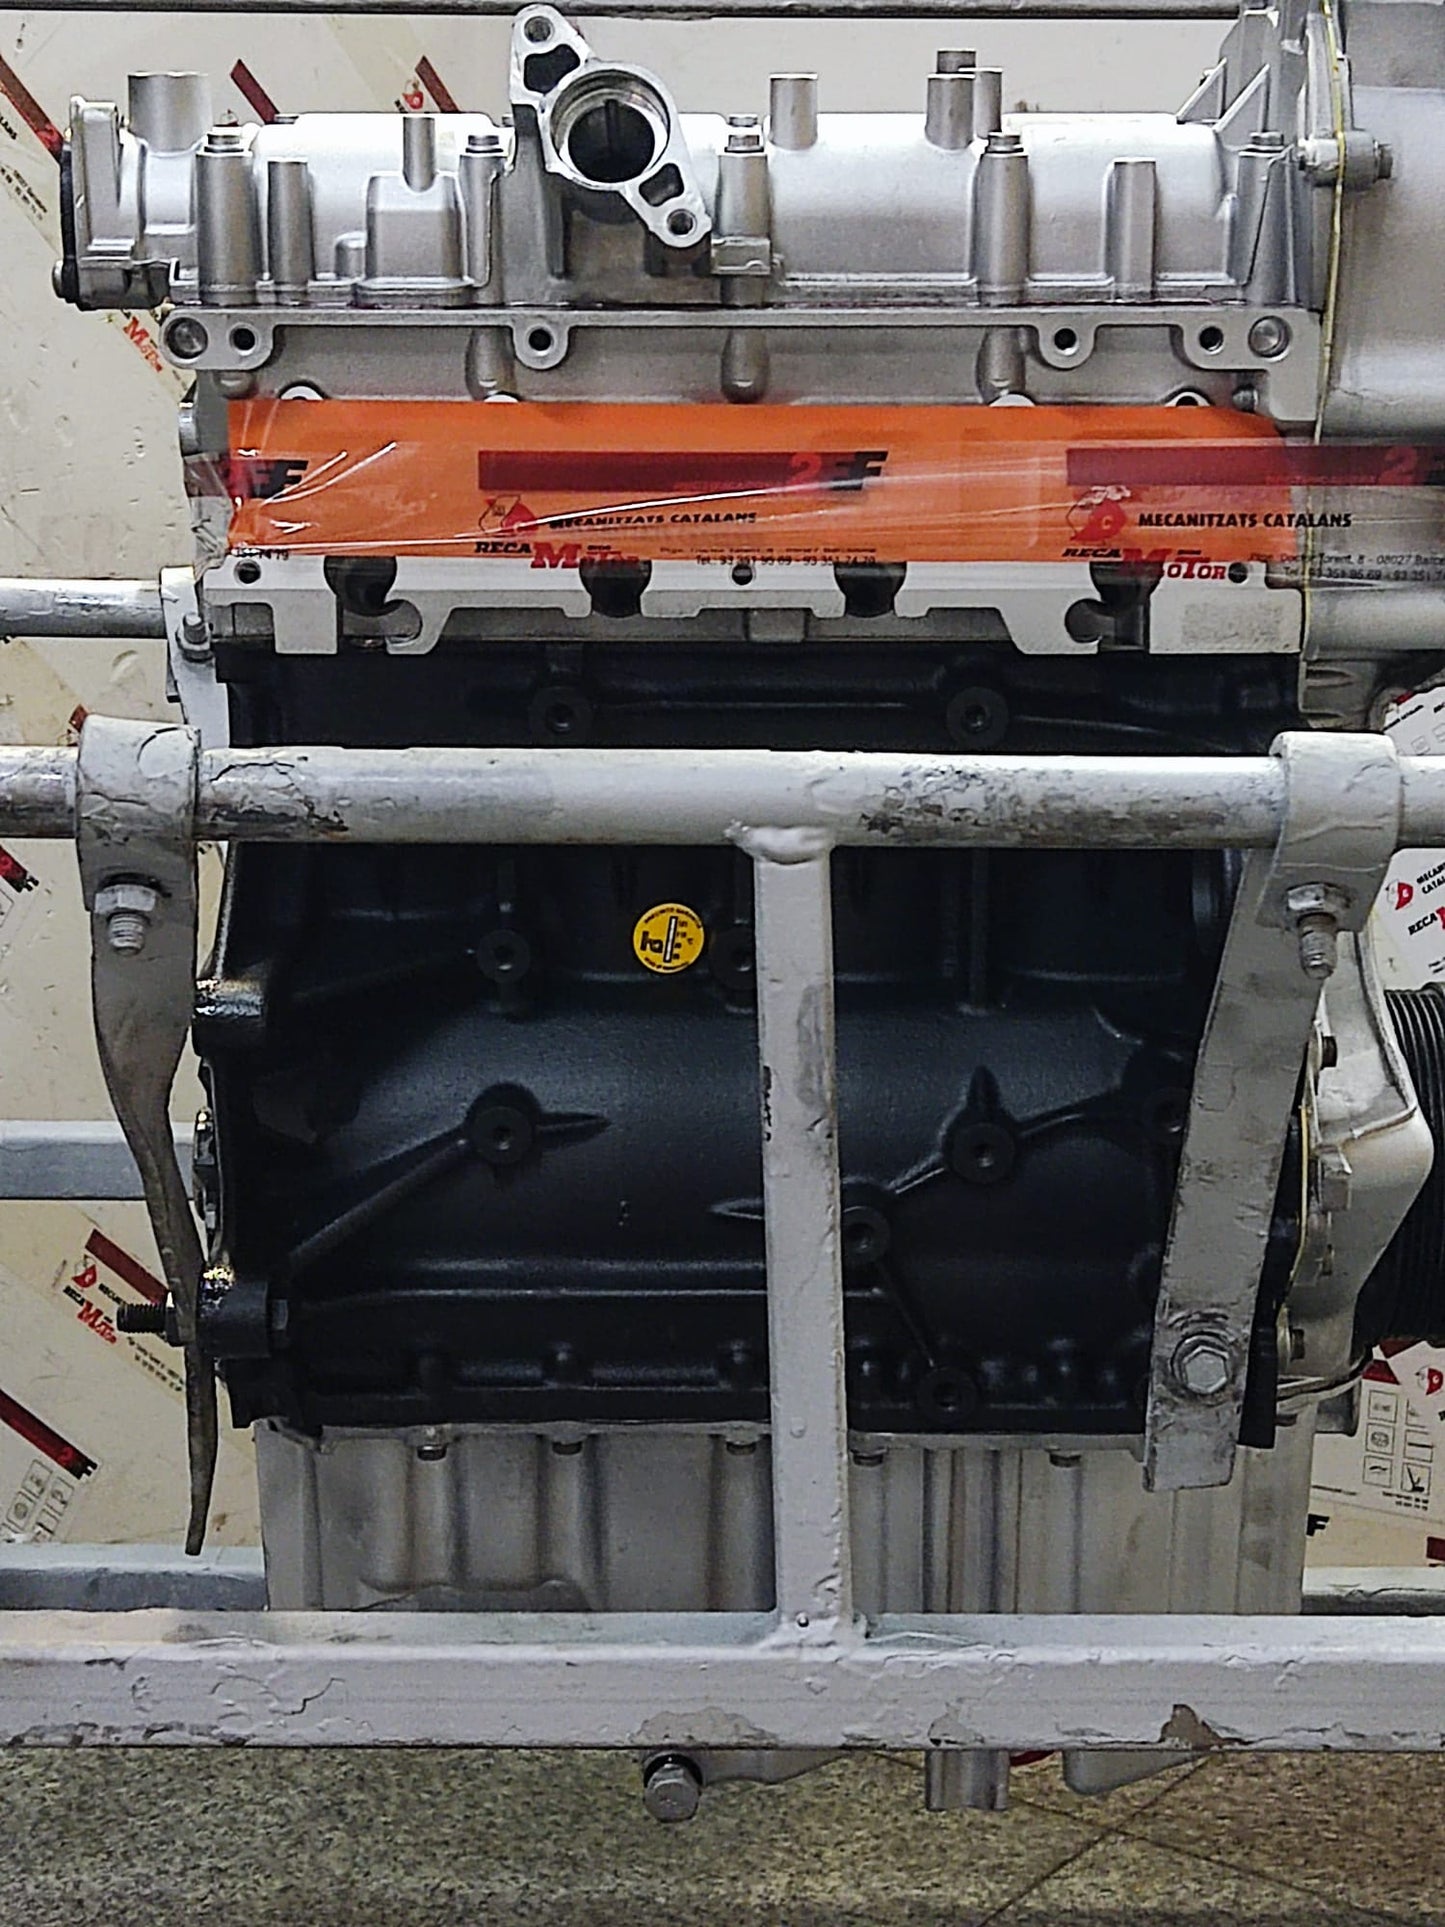 1.4 TFSI VAG . Motor reconstruido de intercambio para motores